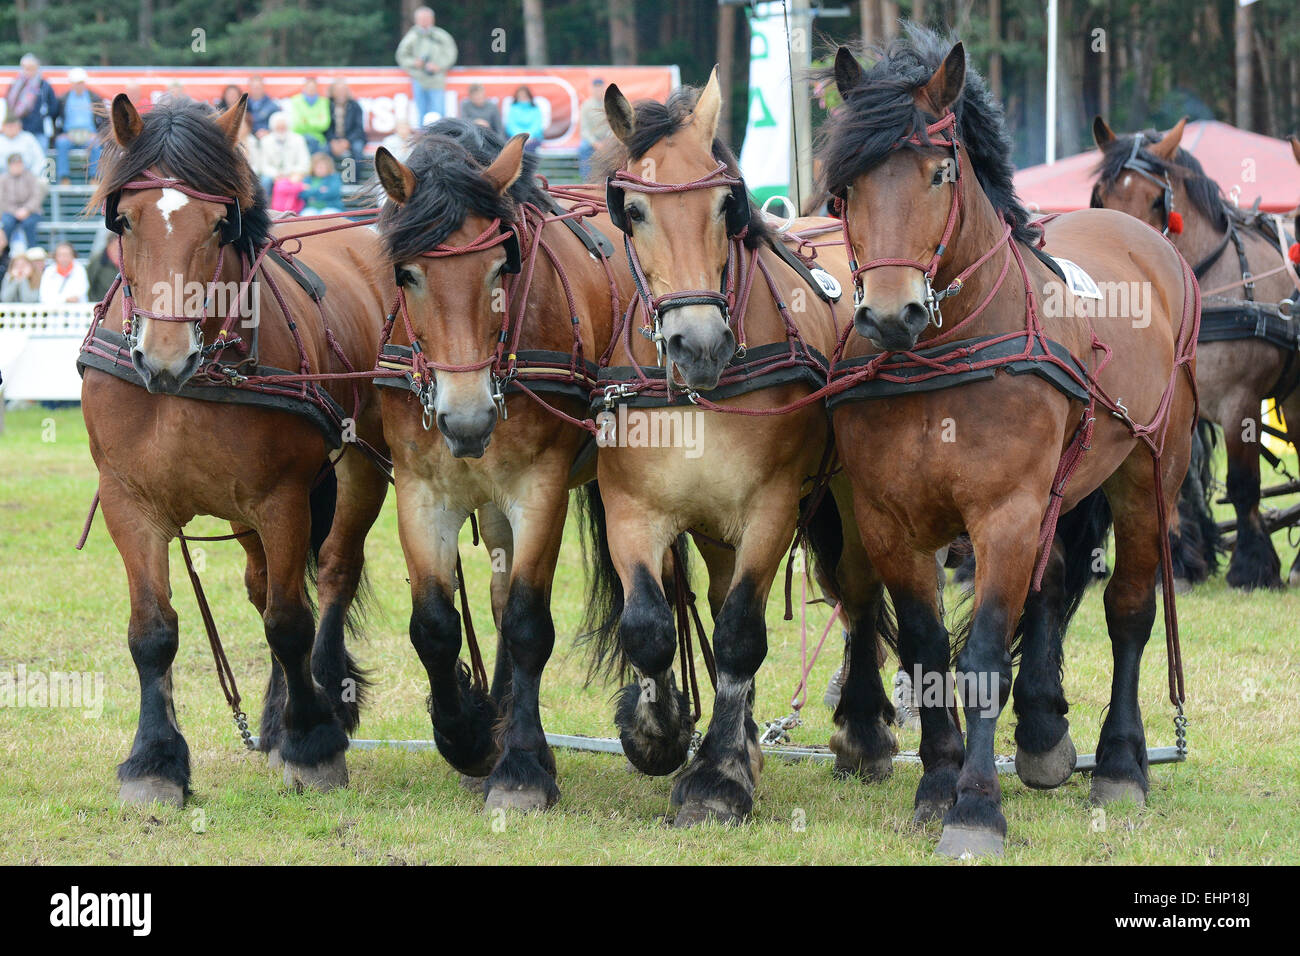 Les Européens plus grand projet de horse show Banque D'Images